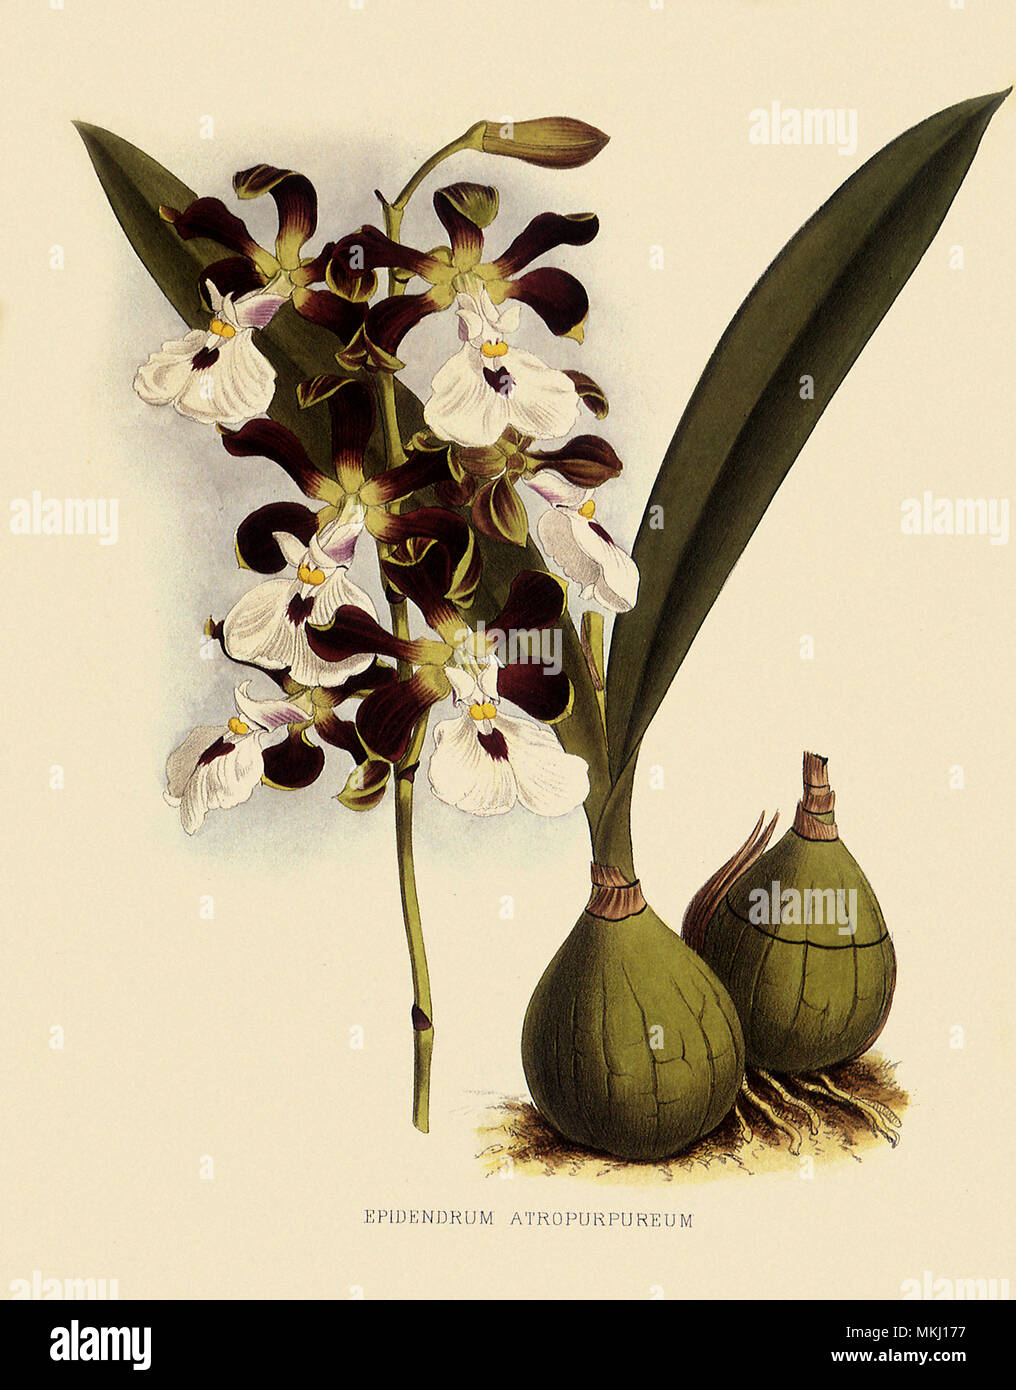 Epidendrum Atropurpureum Stock Photo